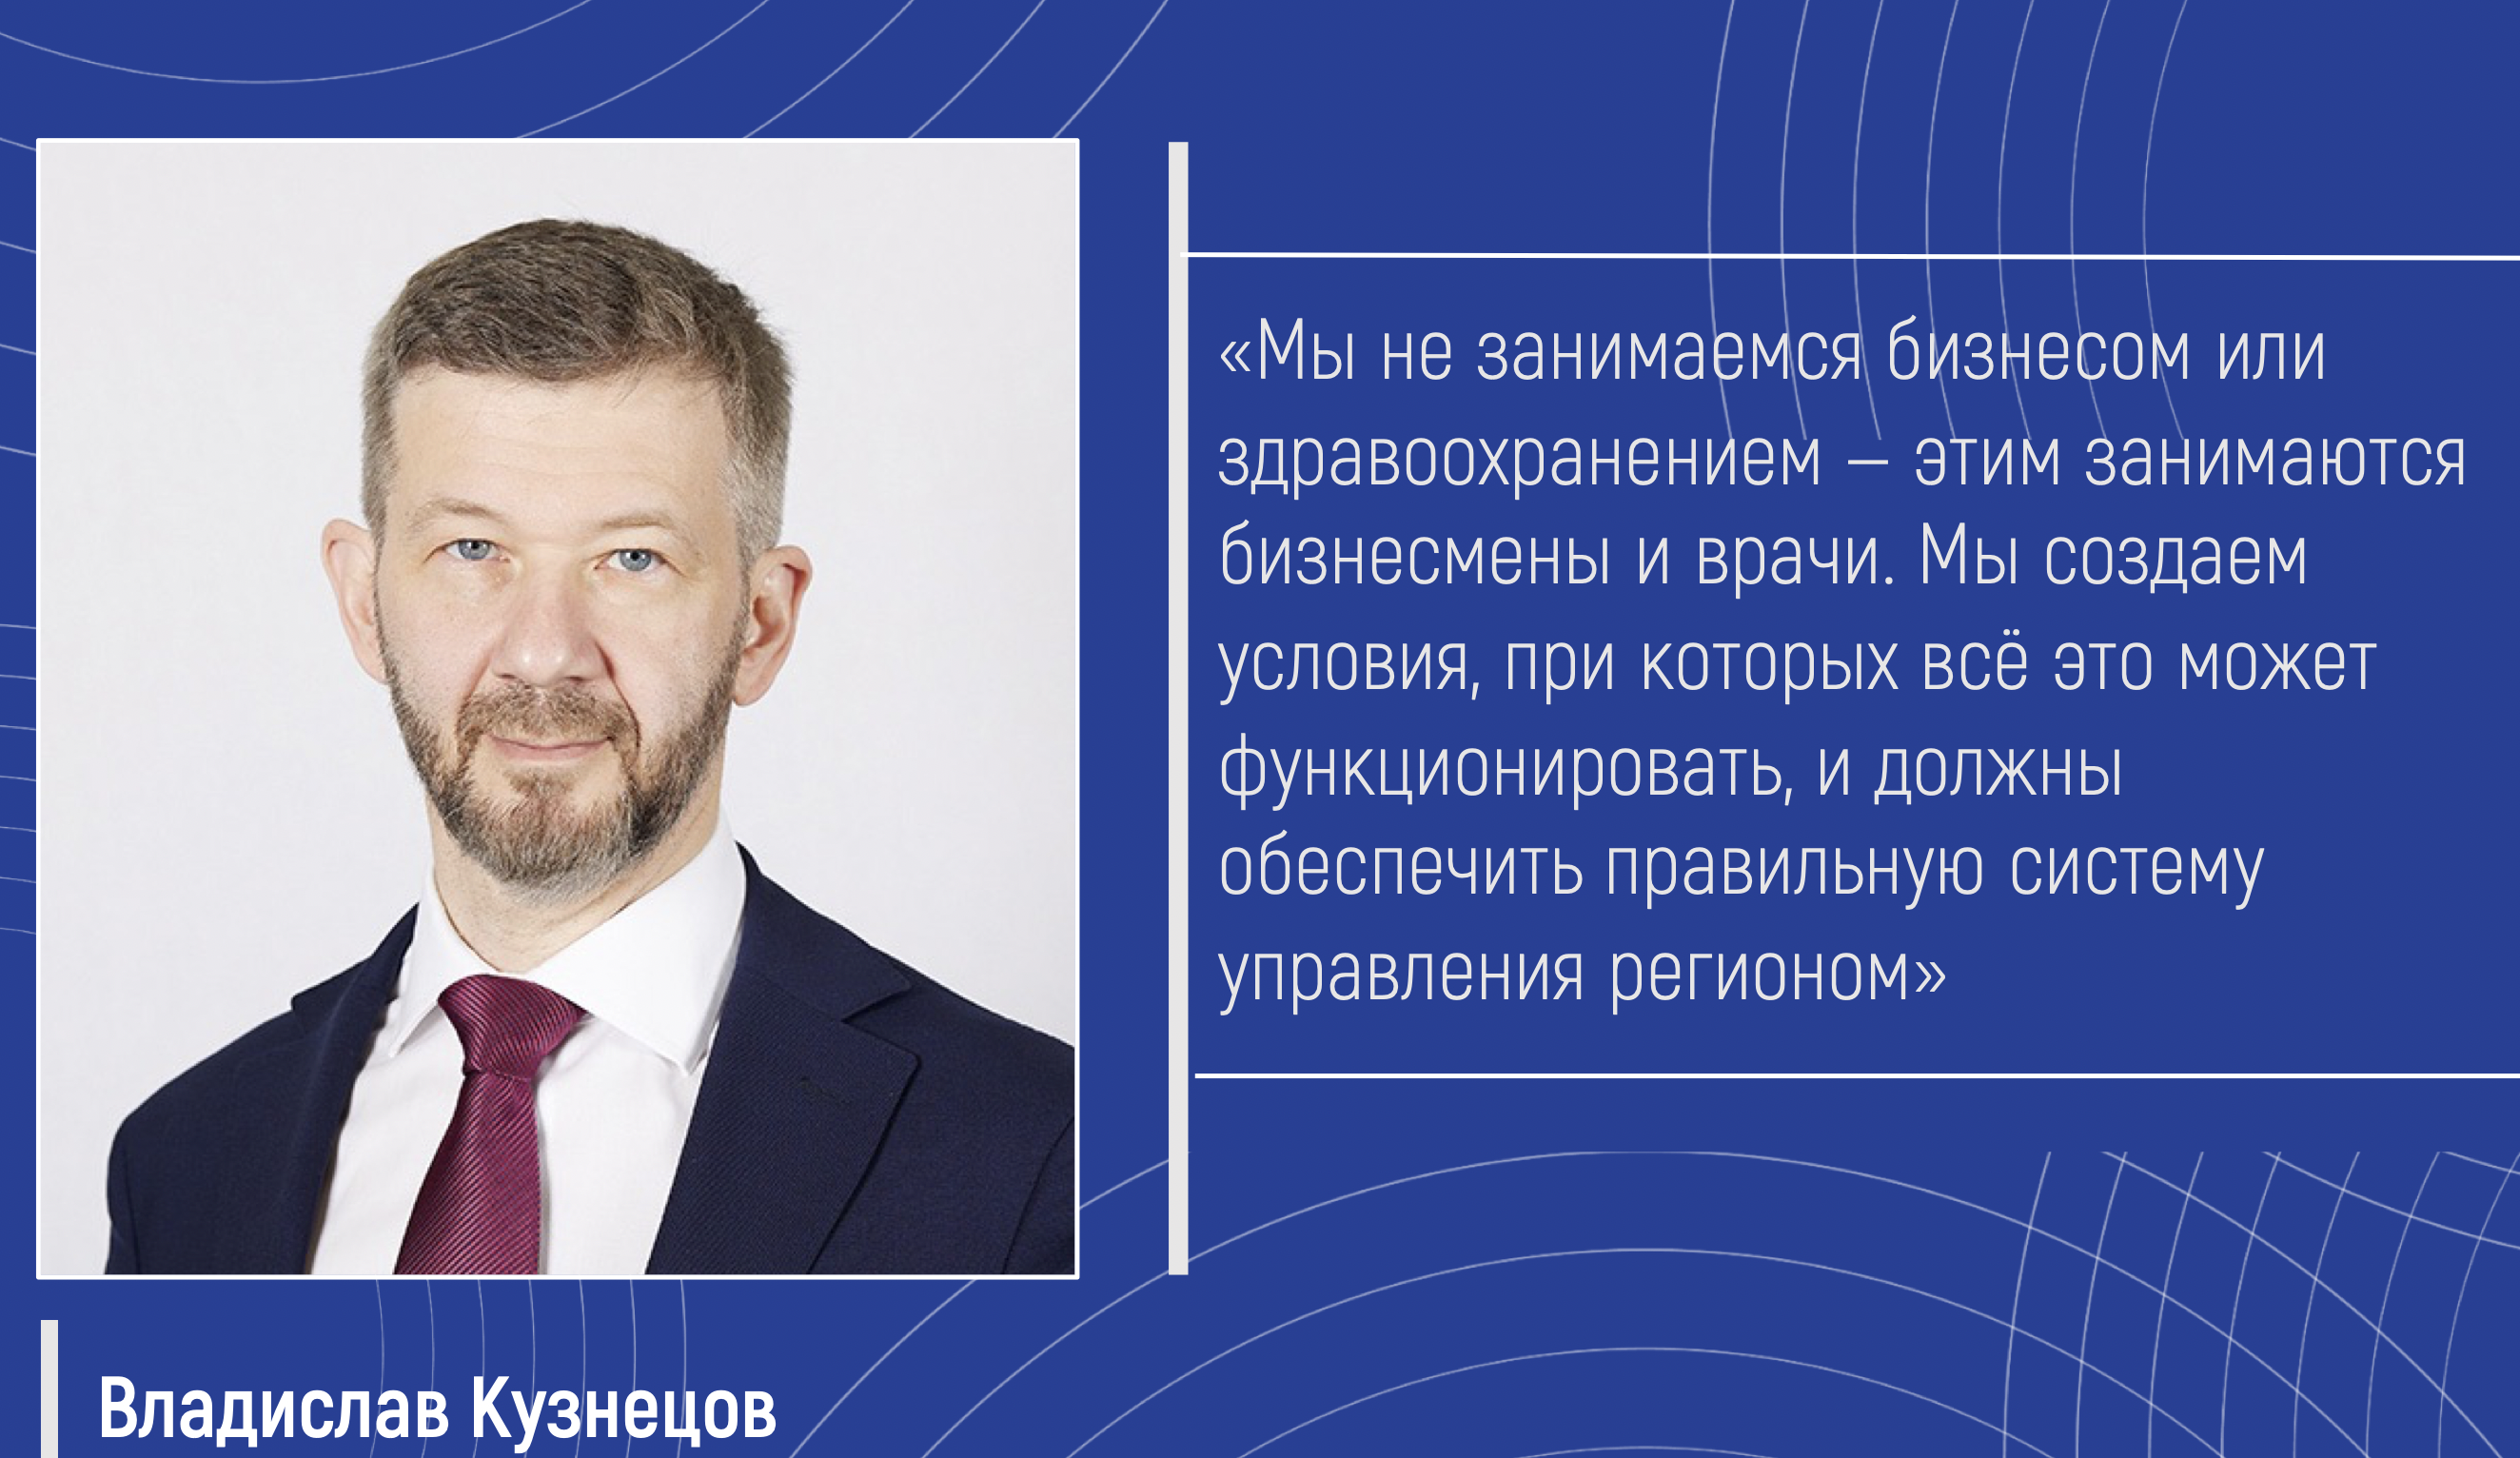 ЭИСИ представил экспертный "портрет" врио губернатора Чукотского автономного округа Владислава Кузнецова